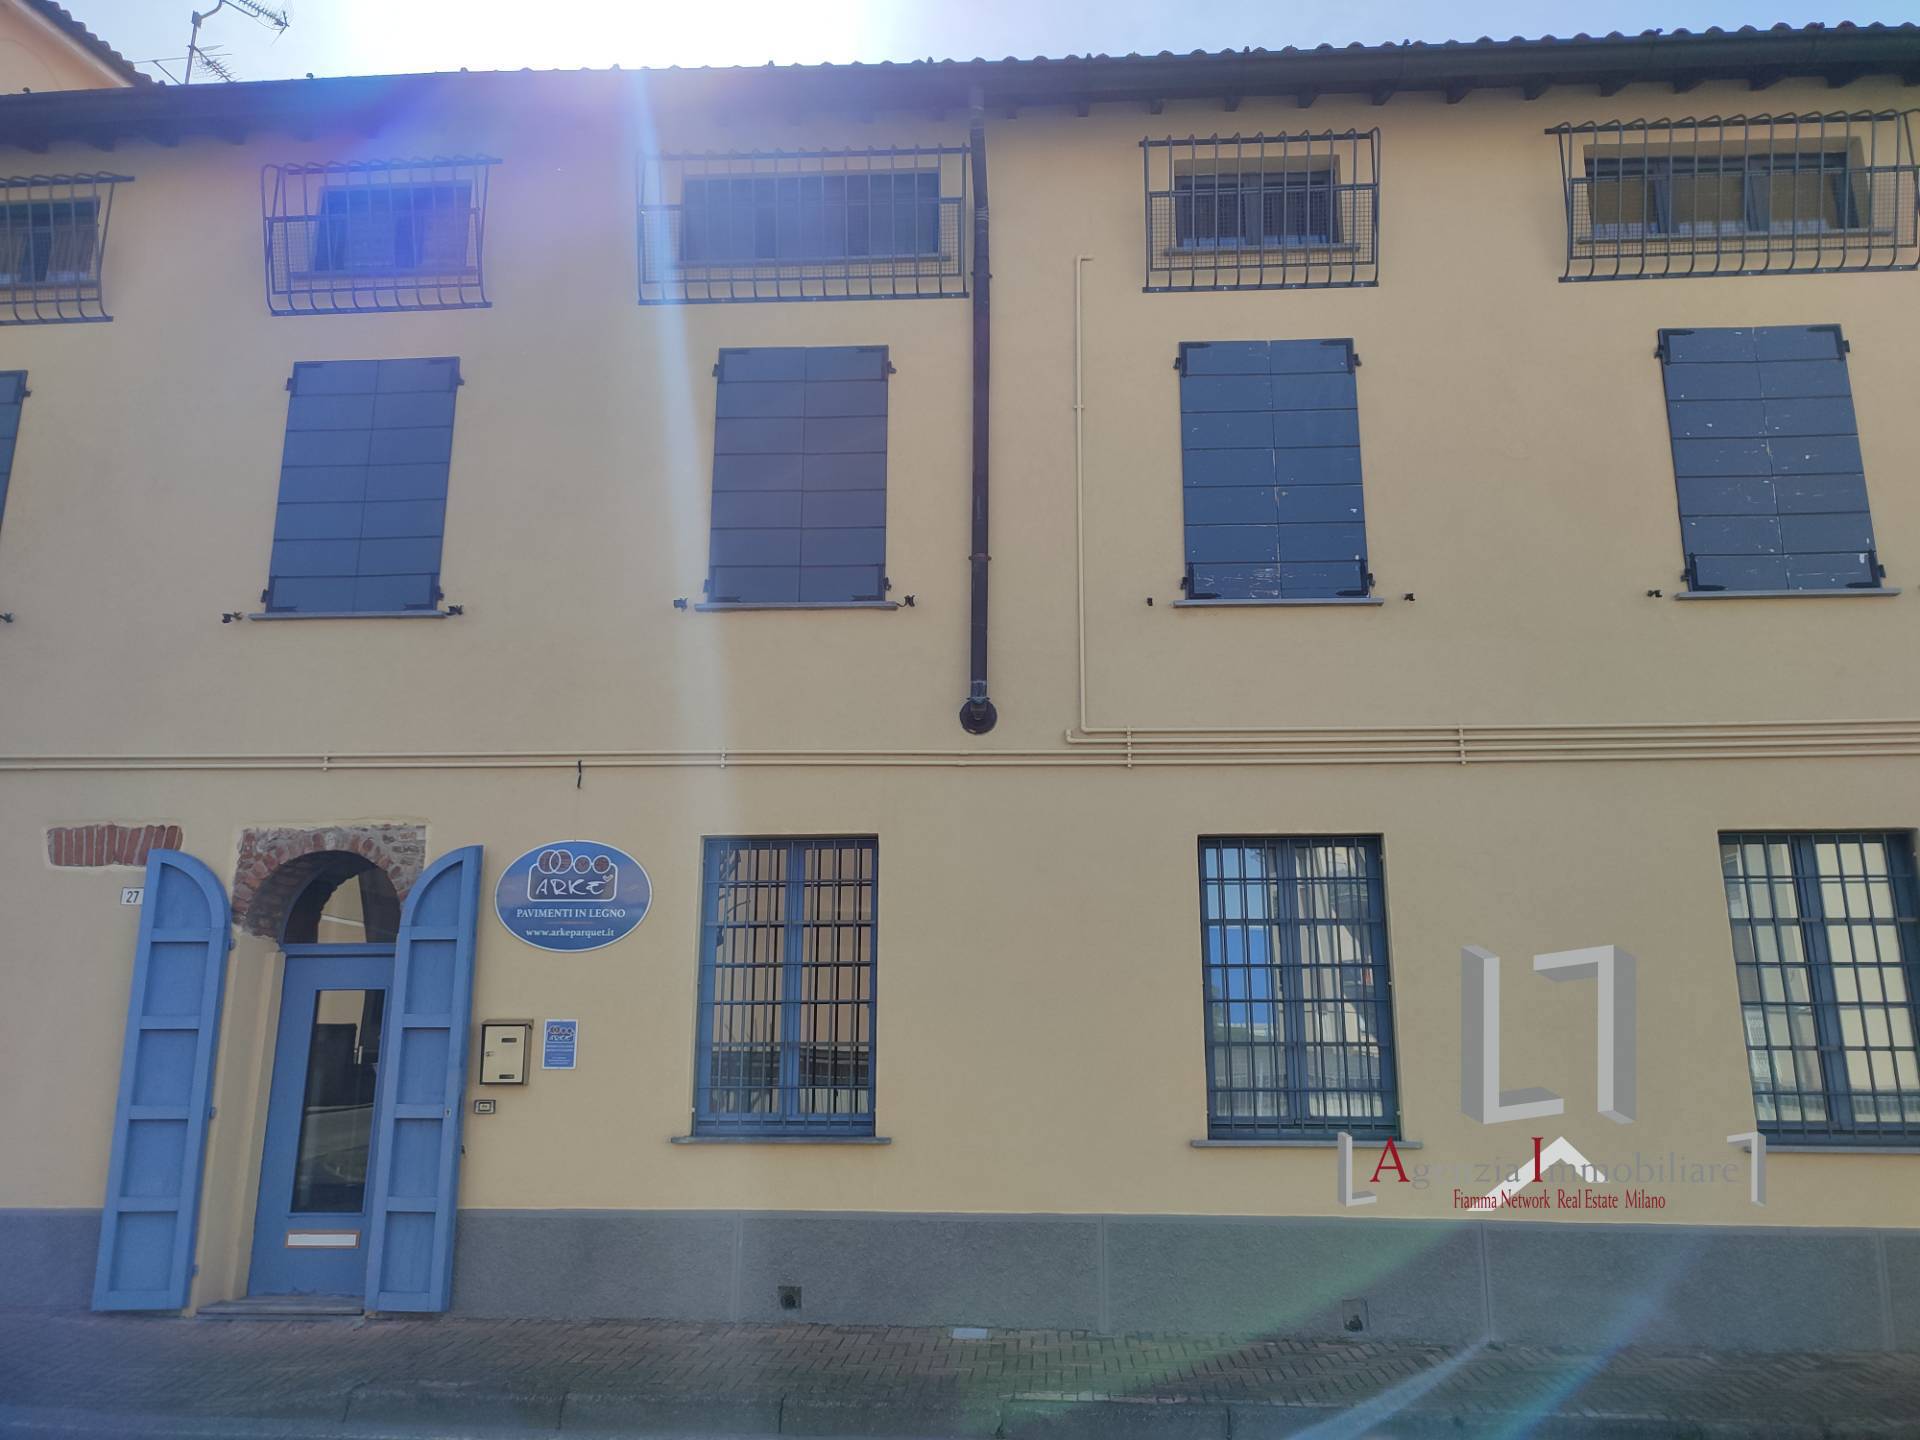 Ufficio / Studio in affitto a Peschiera Borromeo, 9999 locali, prezzo € 140.000 | PortaleAgenzieImmobiliari.it